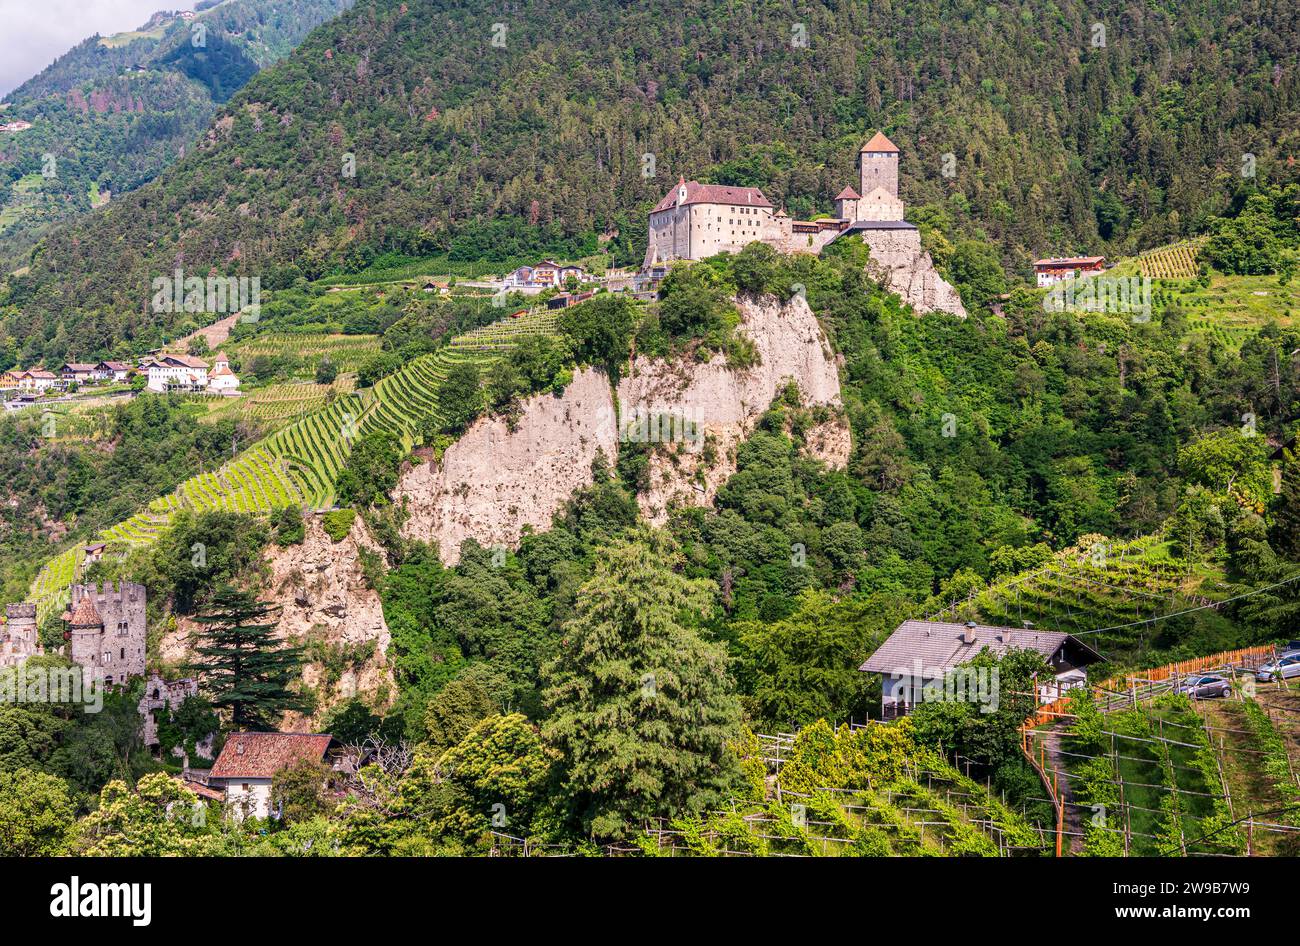 Castello Tirolo vicino al paese Tirolo vicino a Merano, alto Adige, Trentino alto Adige, Italia settentrionale, Europa - paesaggio estivo Foto Stock